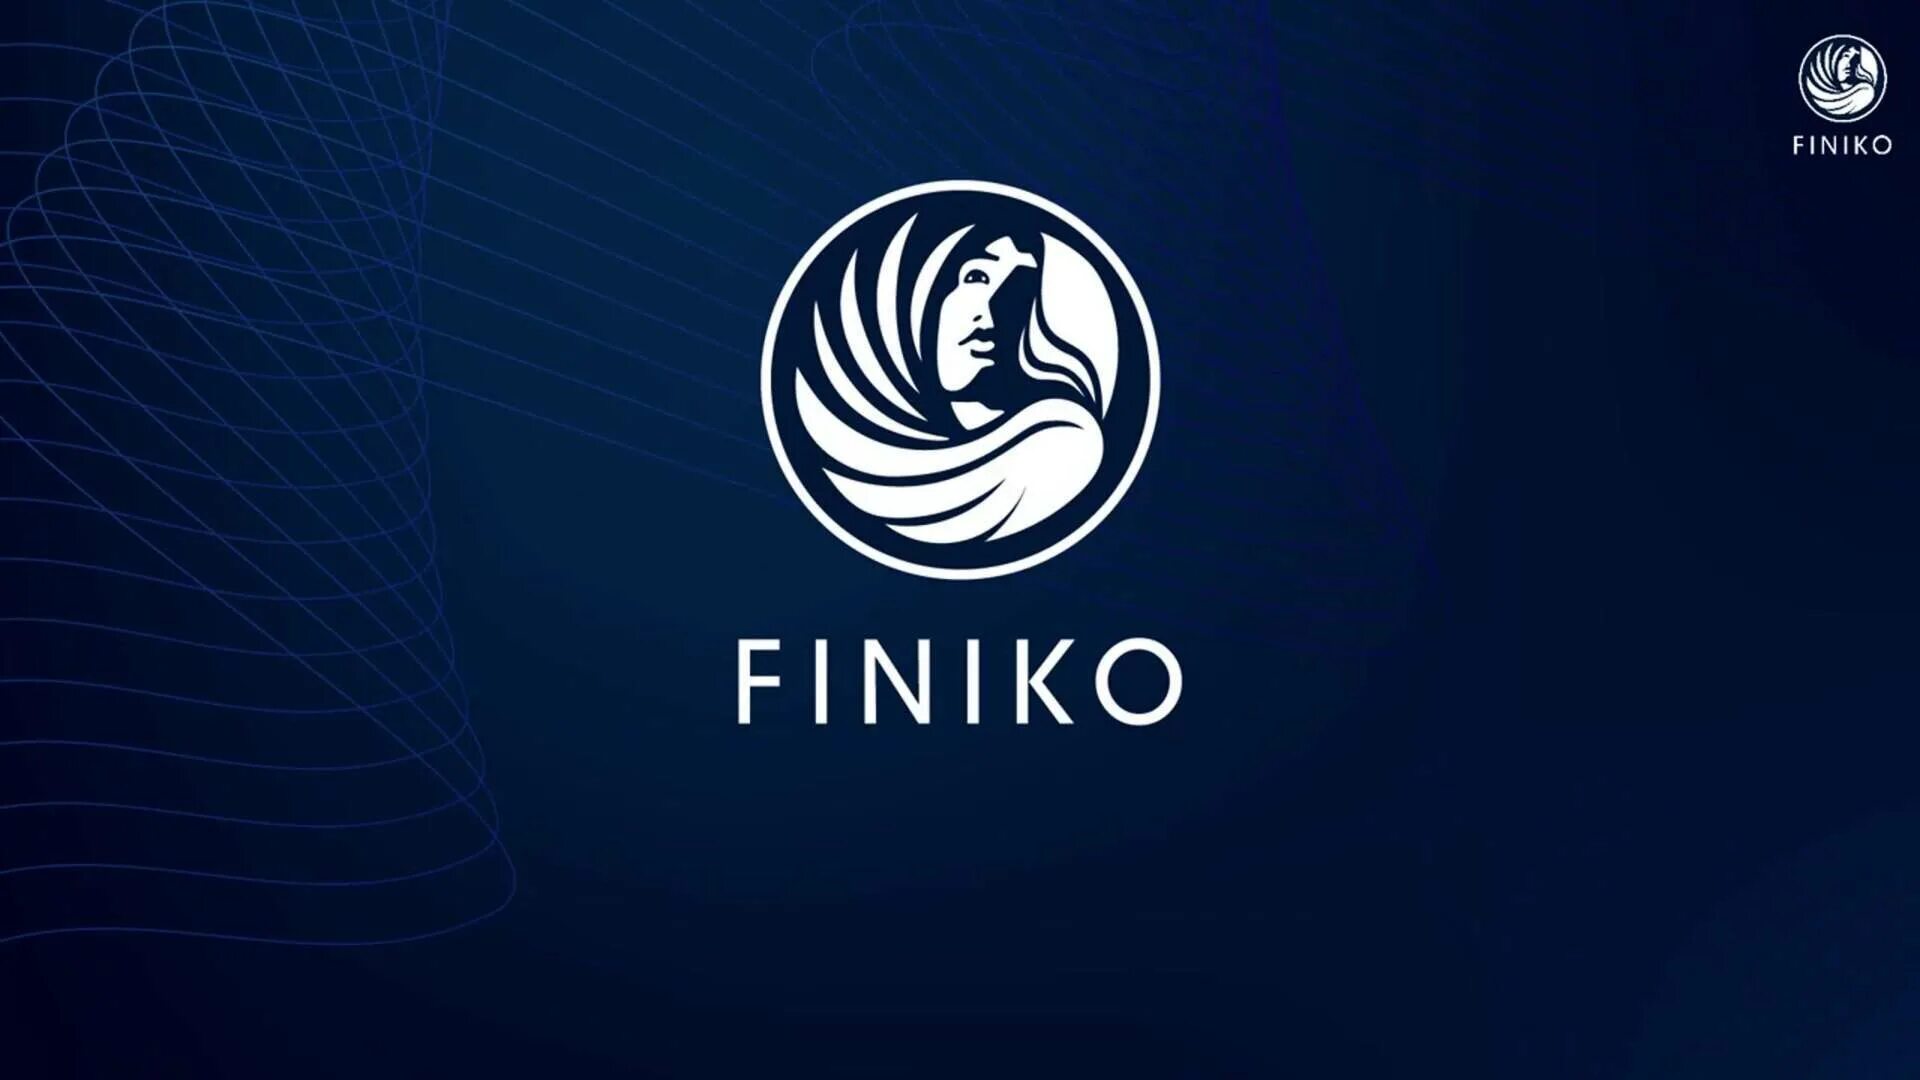 Финико. Компания Finiko. Финансовая пирамида Финико. Эмблема Финико. Фиников пирамида